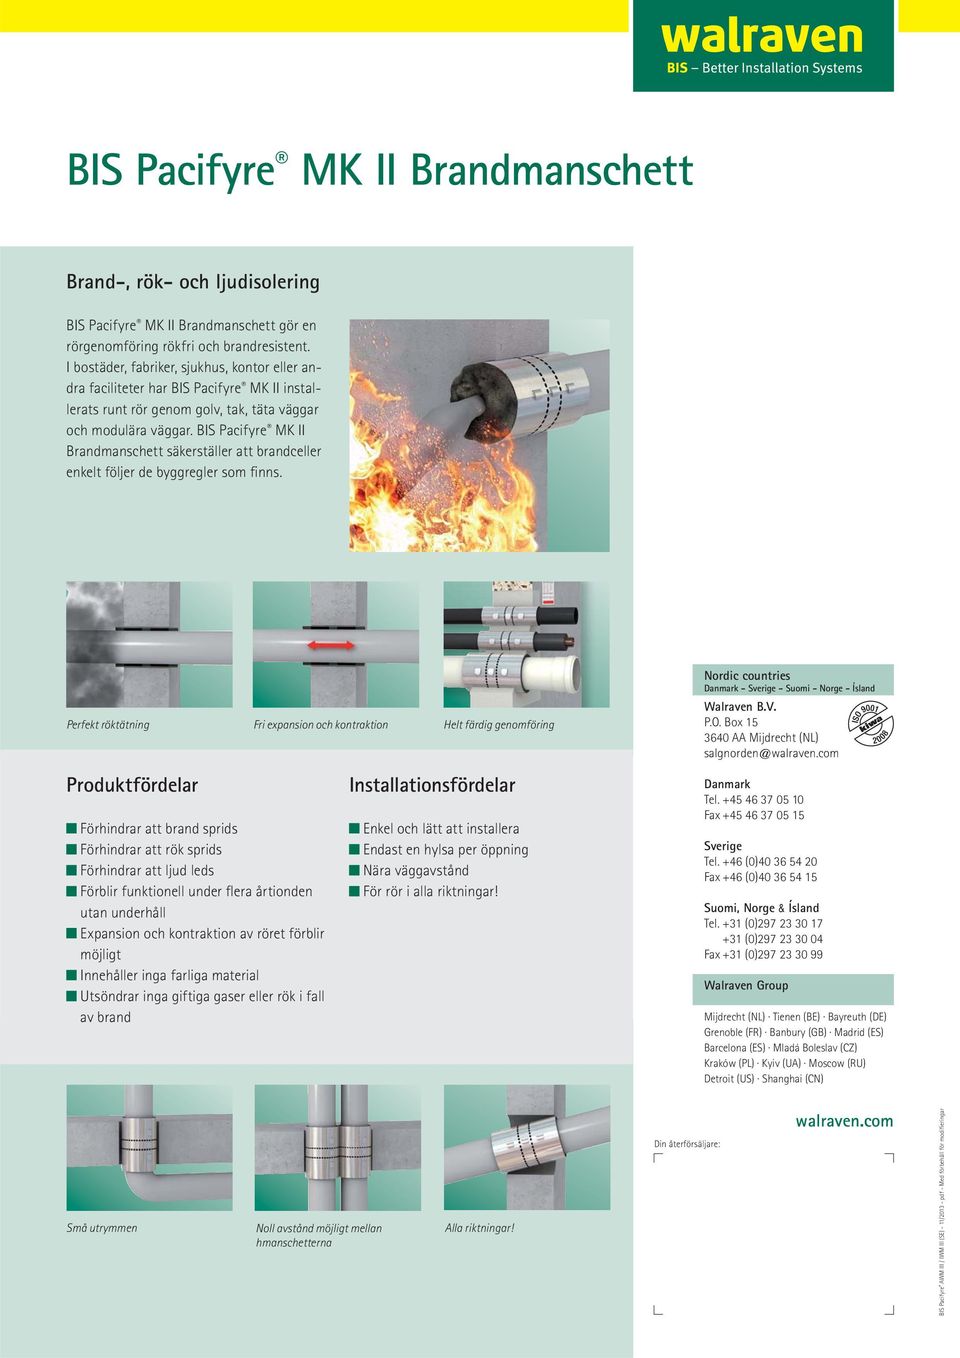 BIS Pacifyre MK II Brandmanschett säkerställer att brandceller enkelt följer de byggregler som finns.